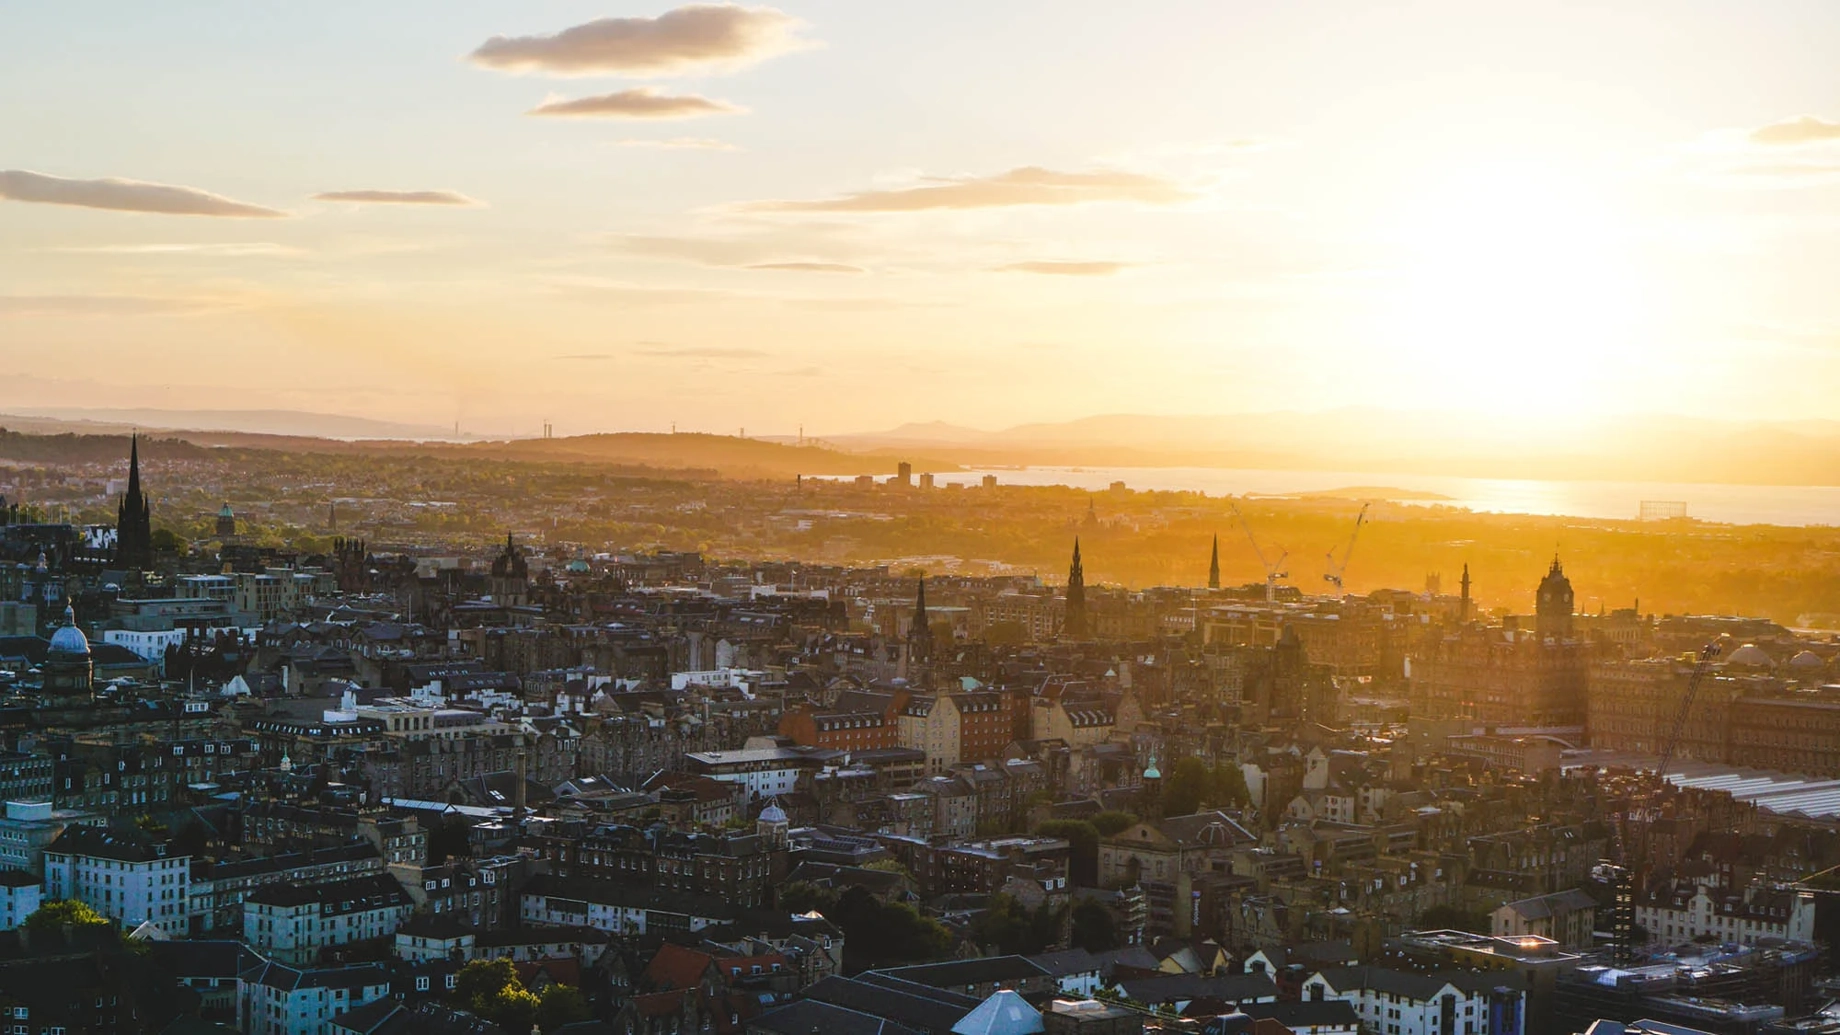 An aerial view across Edinburgh in Scotland